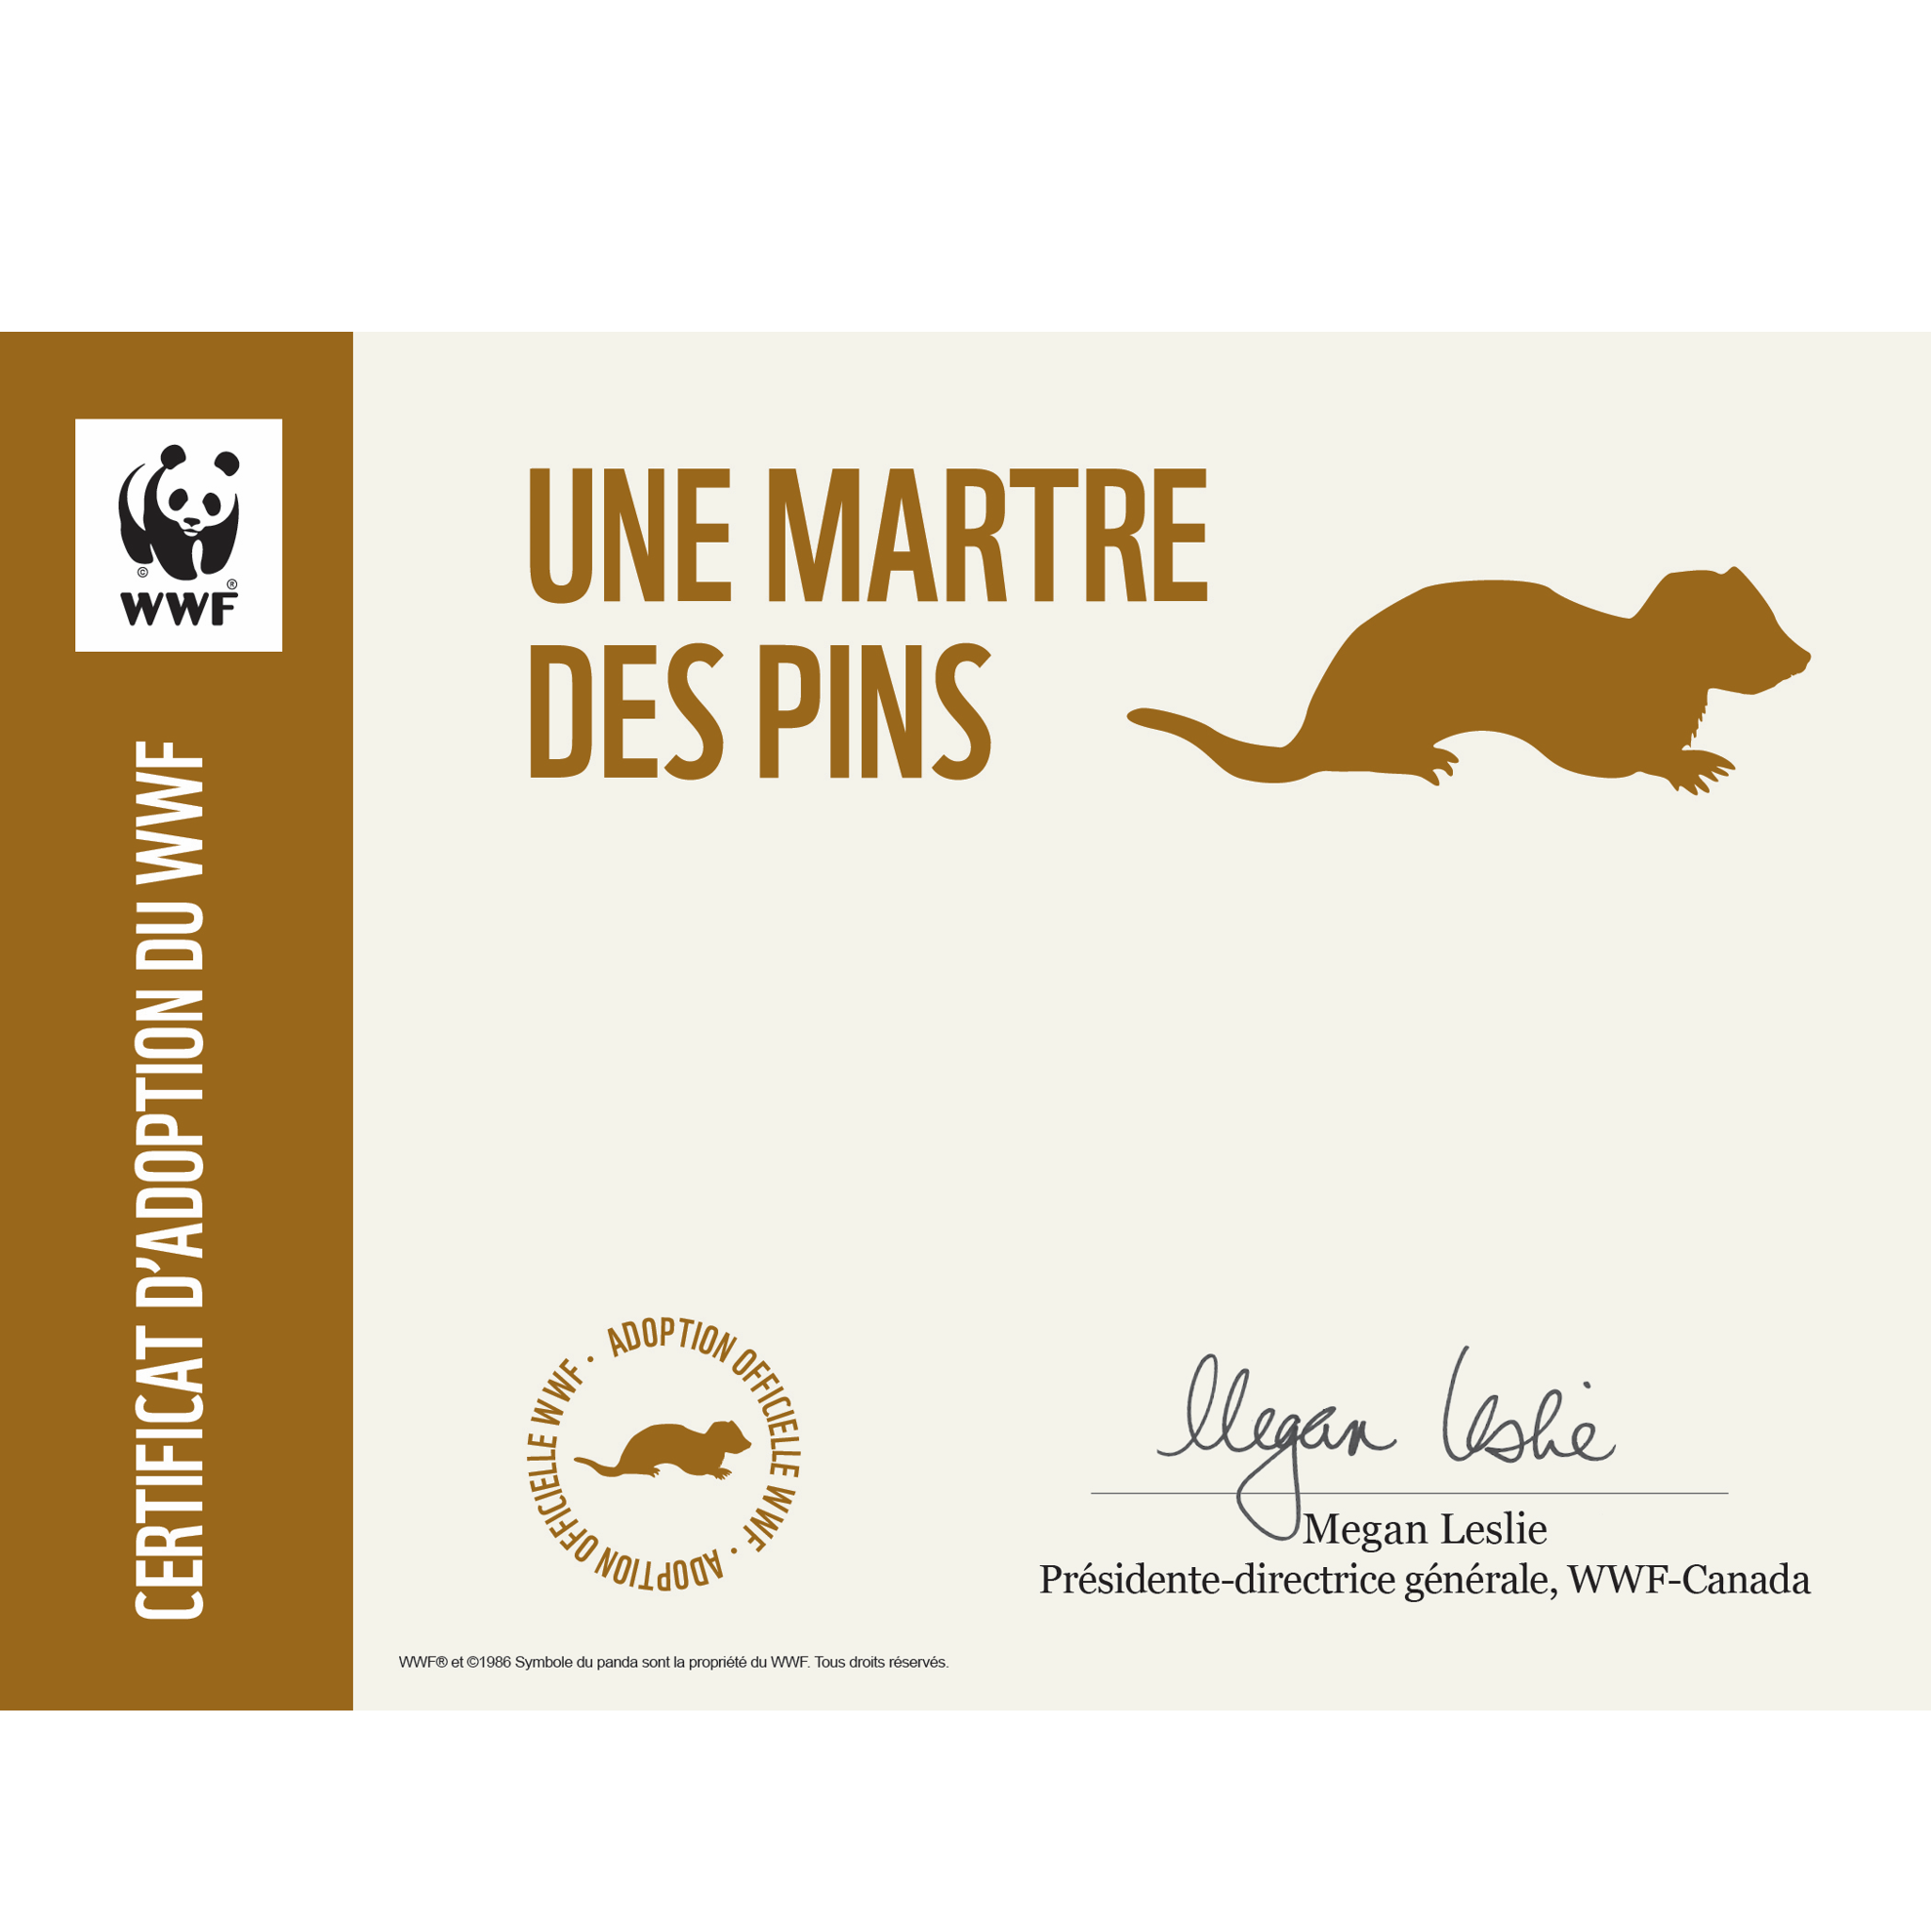 Martre des pins - WWF-Canada